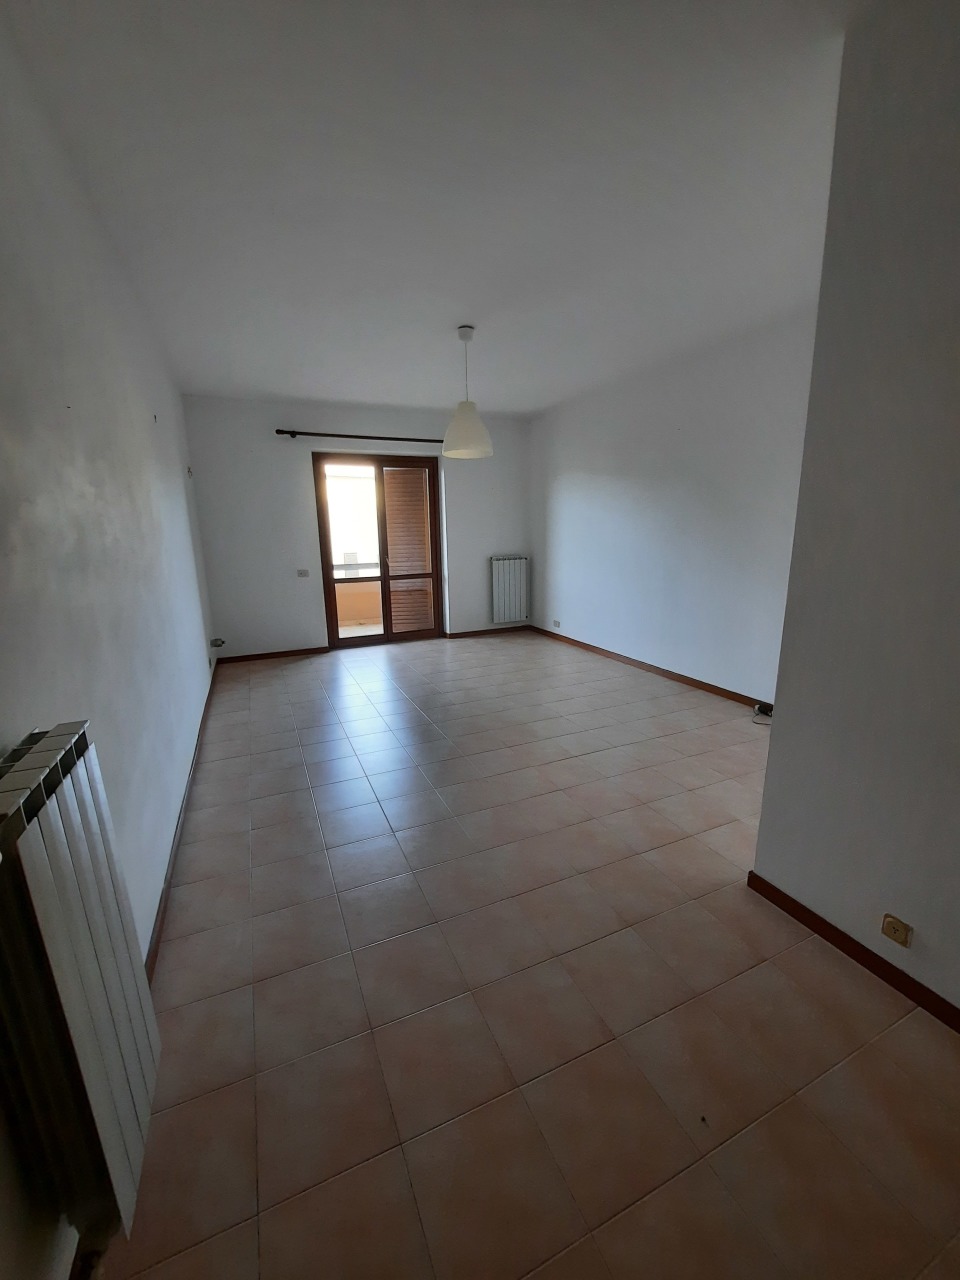 Appartamento in vendita a Faleria, 5 locali, prezzo € 90.000 | PortaleAgenzieImmobiliari.it